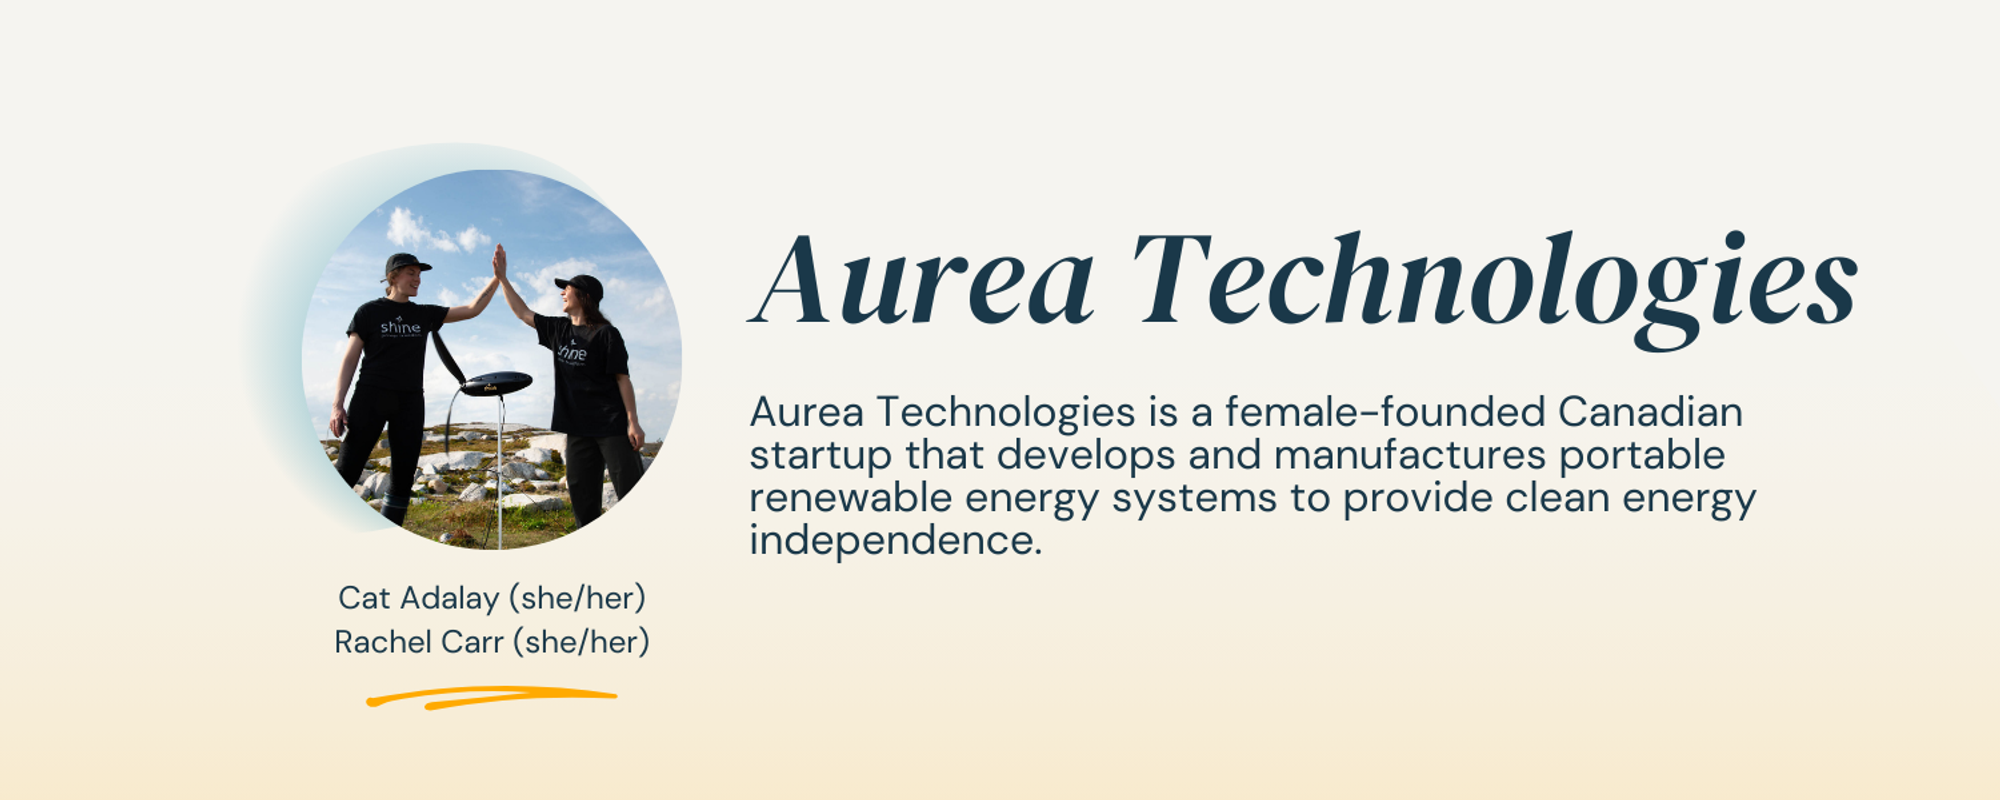 Aurea Technologies